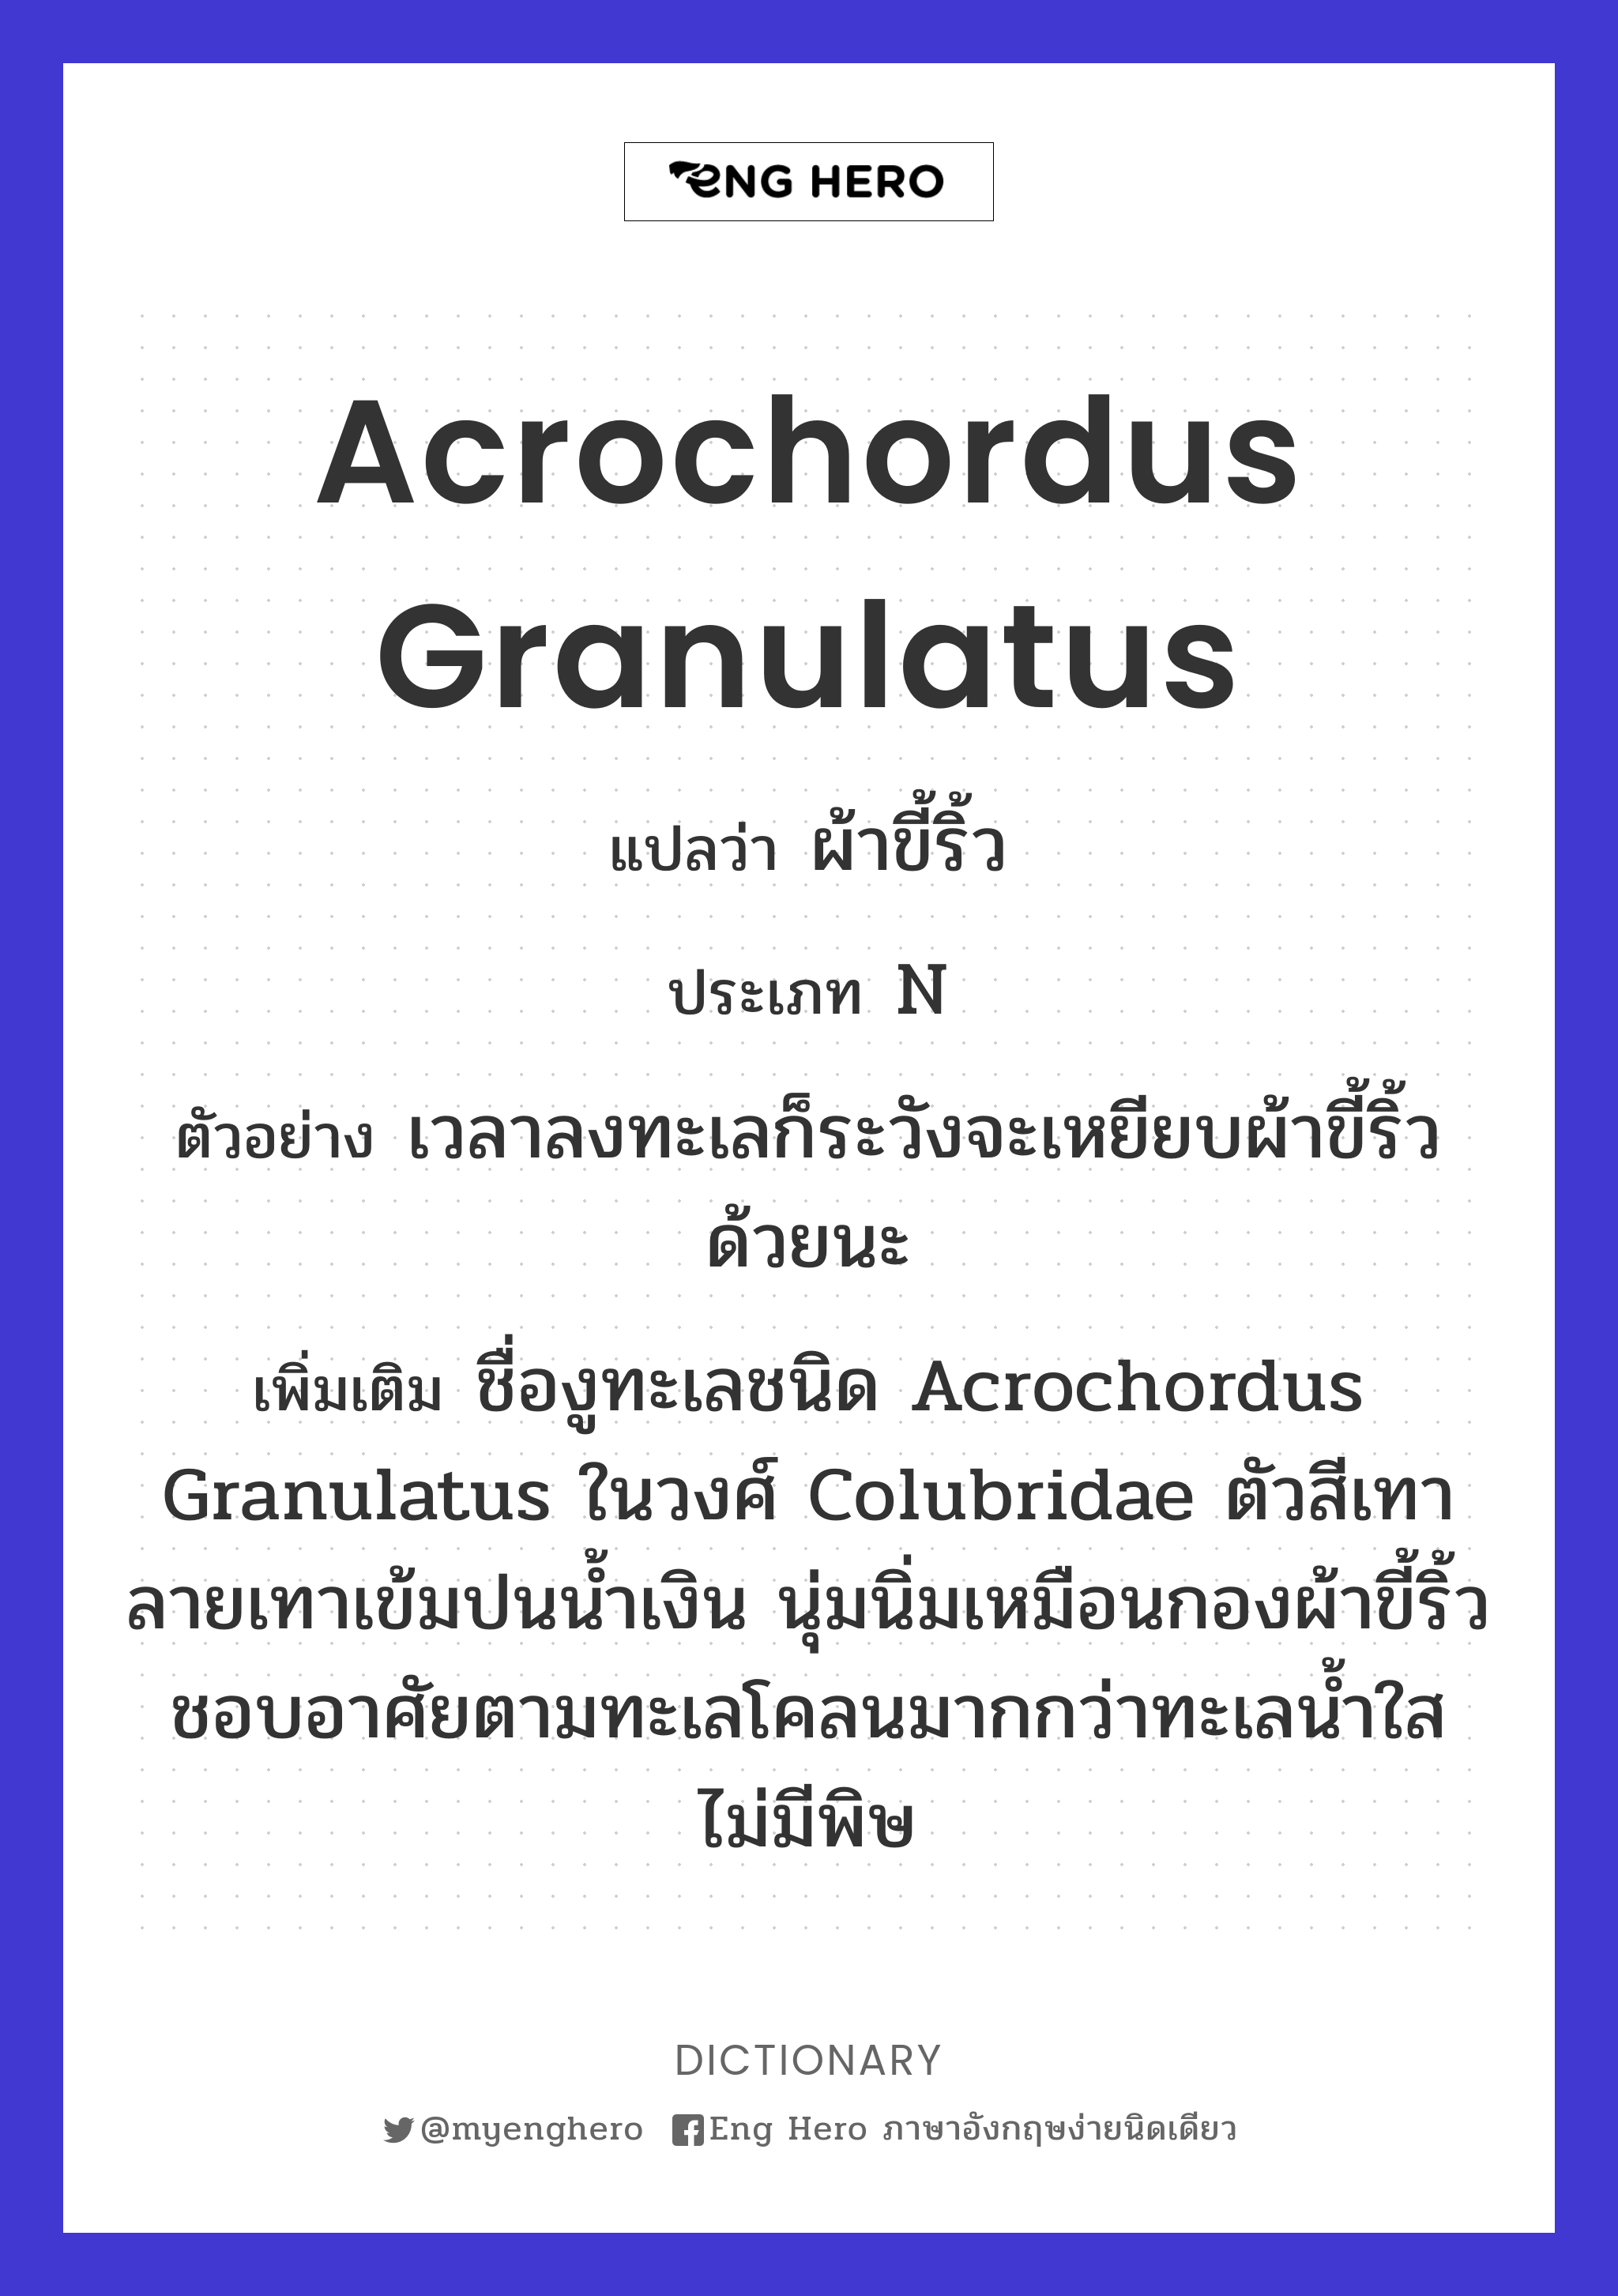 Acrochordus granulatus